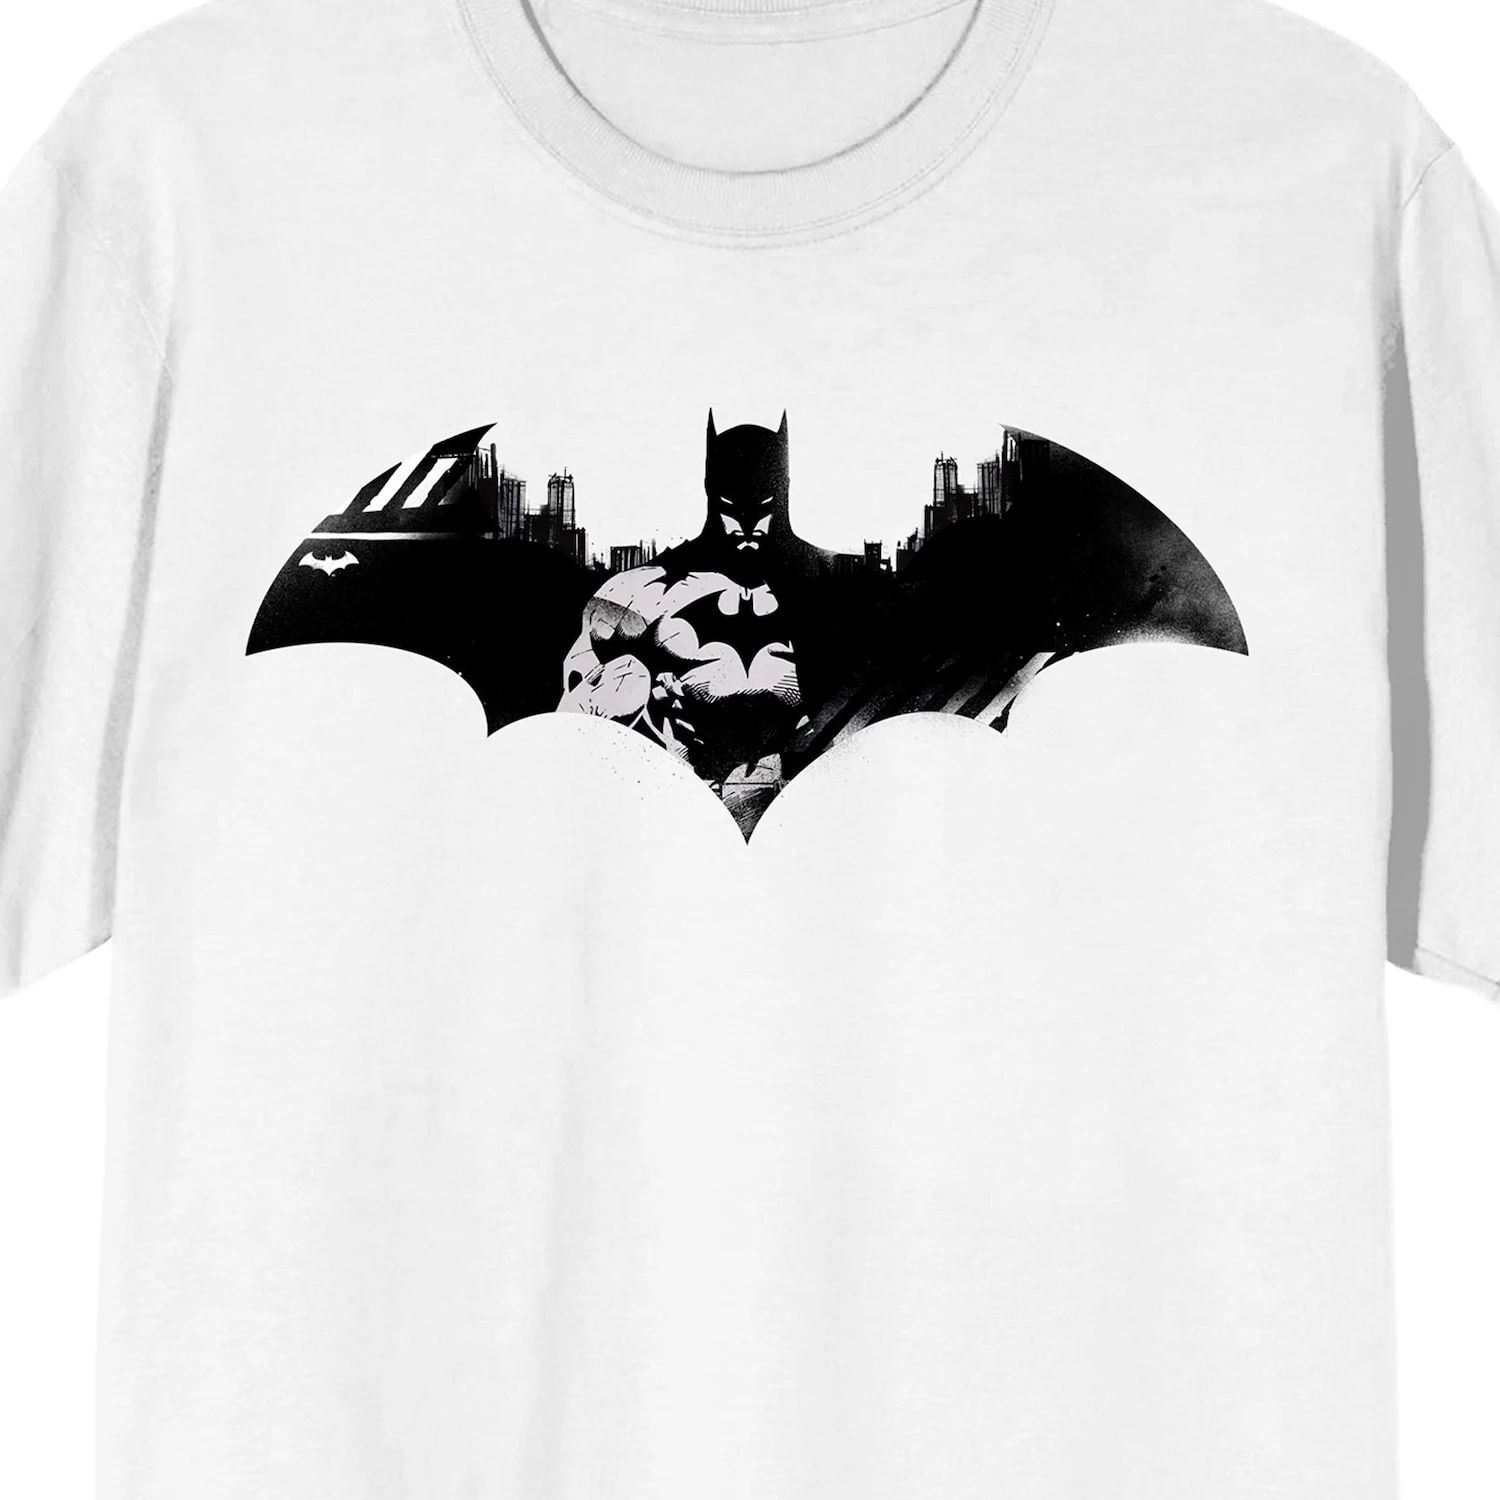 Мужская футболка с логотипом DC Comics Batman Licensed Character набор batman фигурка кружка logo